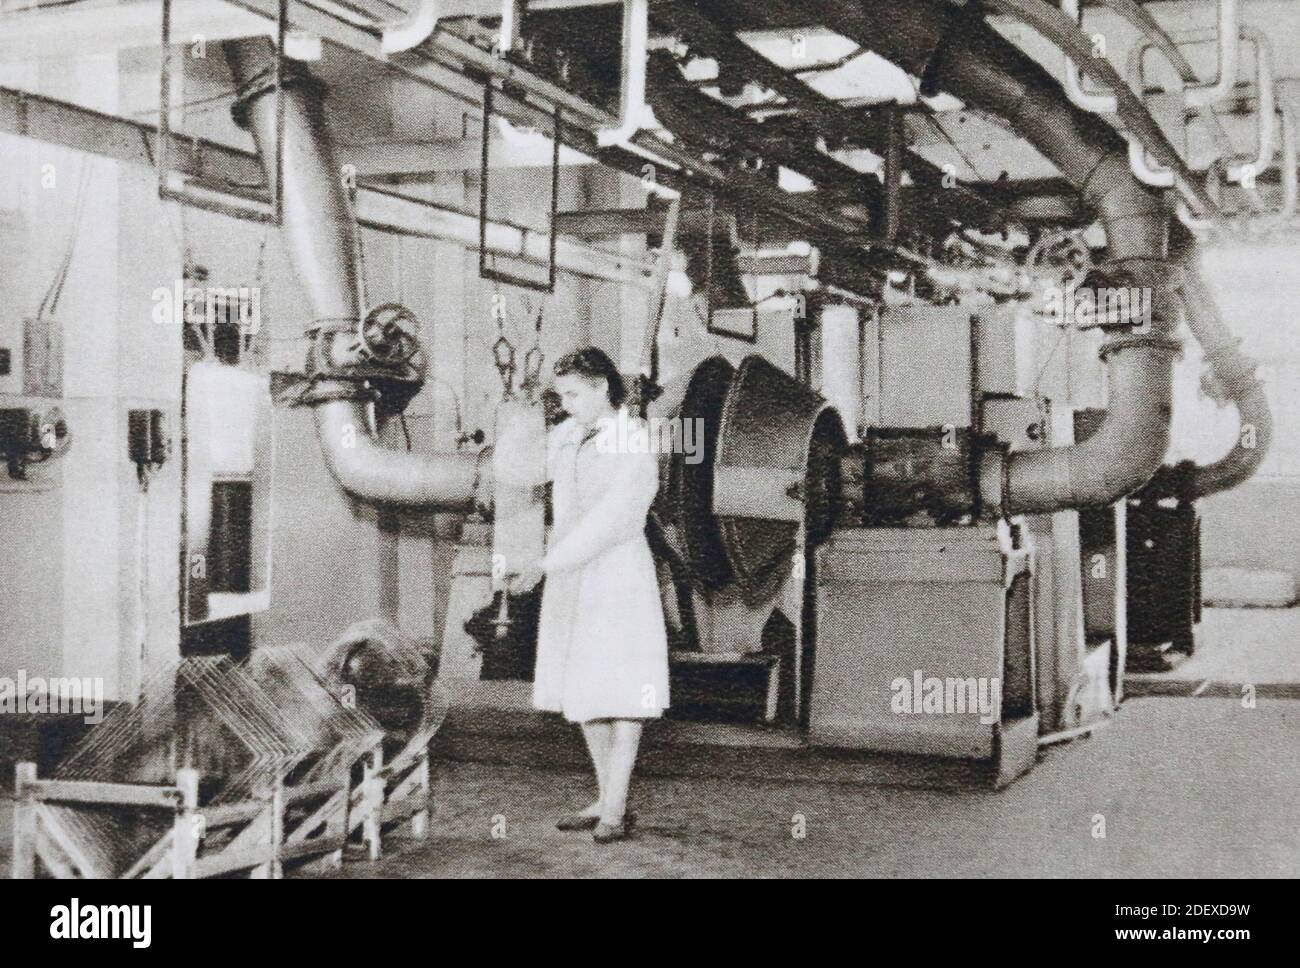 Dans l'atelier pour la production de verre automobile Stalinite de la Gorky Glass Factory en URSS dans les années 1950. Banque D'Images